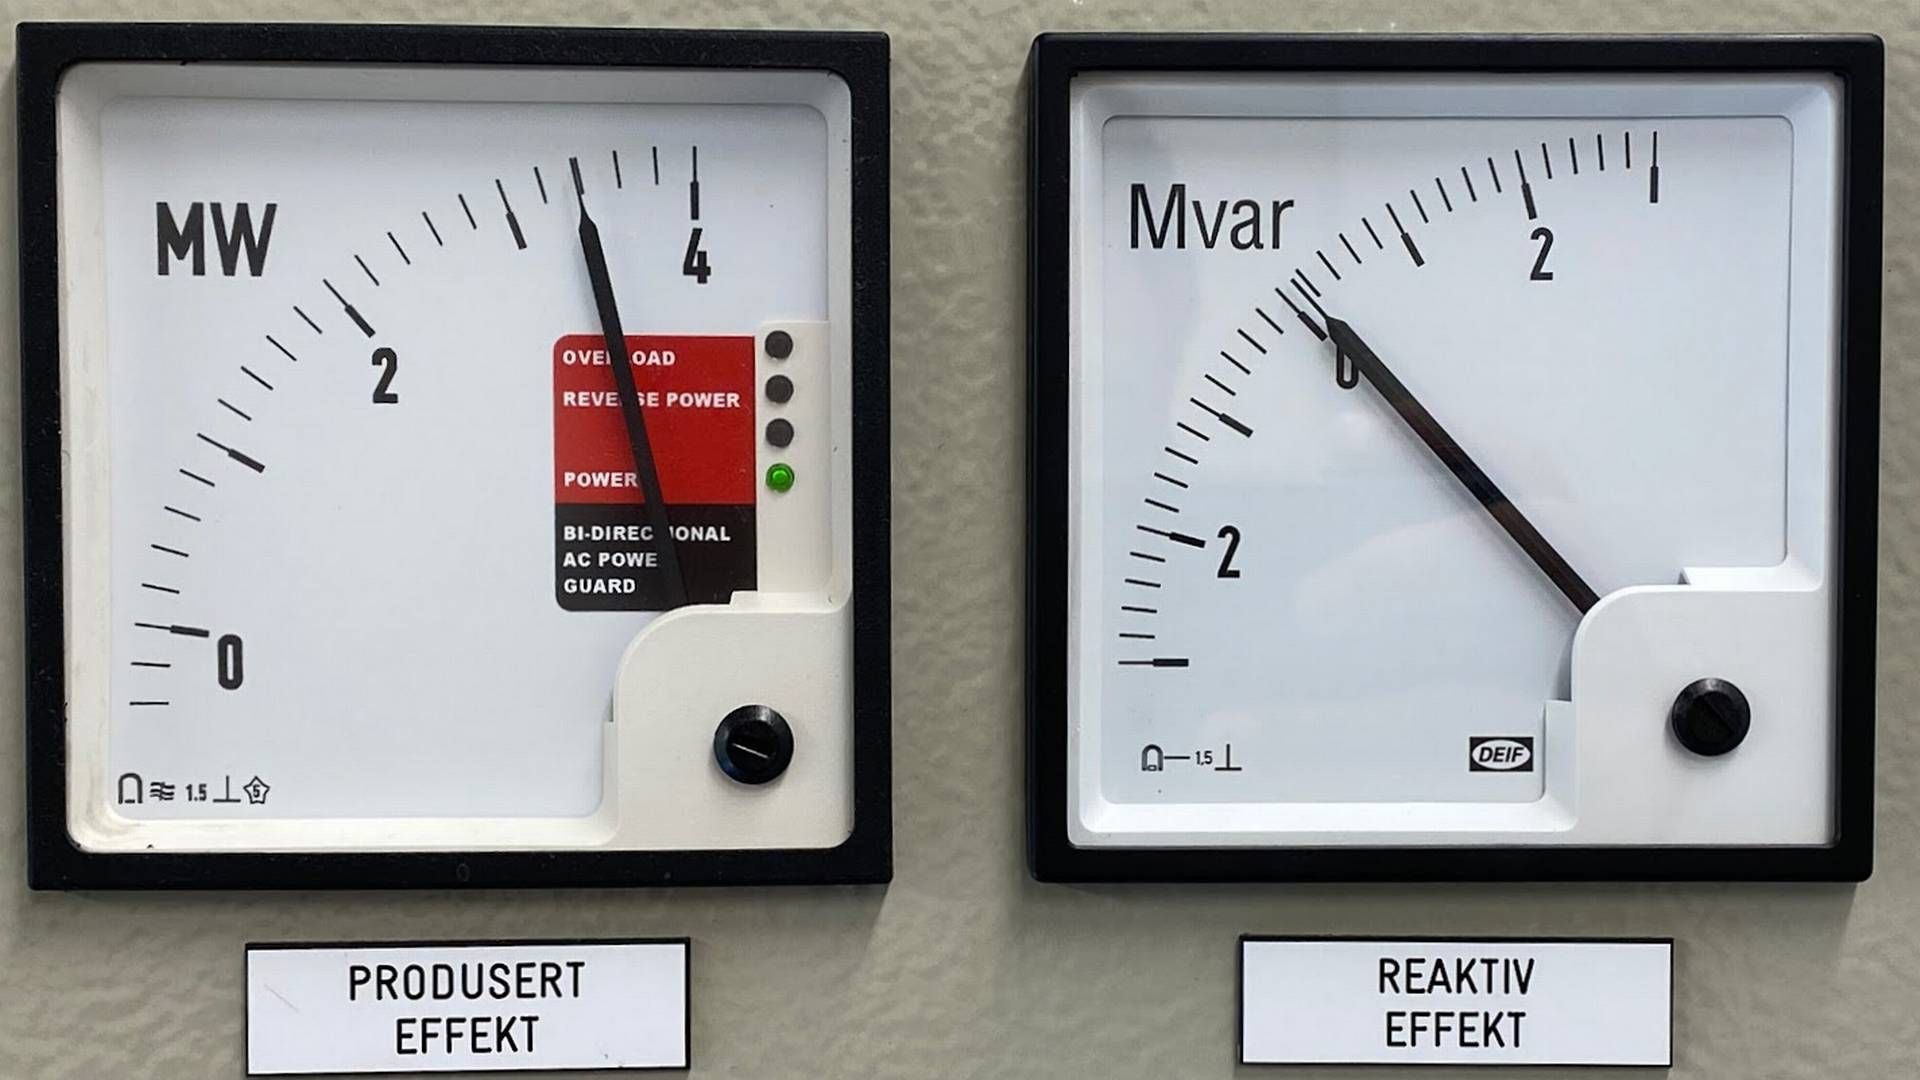 DYR EFFEKTBRIST: Manglende effekt vil sette strømprisen til kraftbørsens makspris. Det tilsvarer 4000 euro/MWh, eller ca. 43,44 kr/kWh. | Foto: Anders Lie Brenna